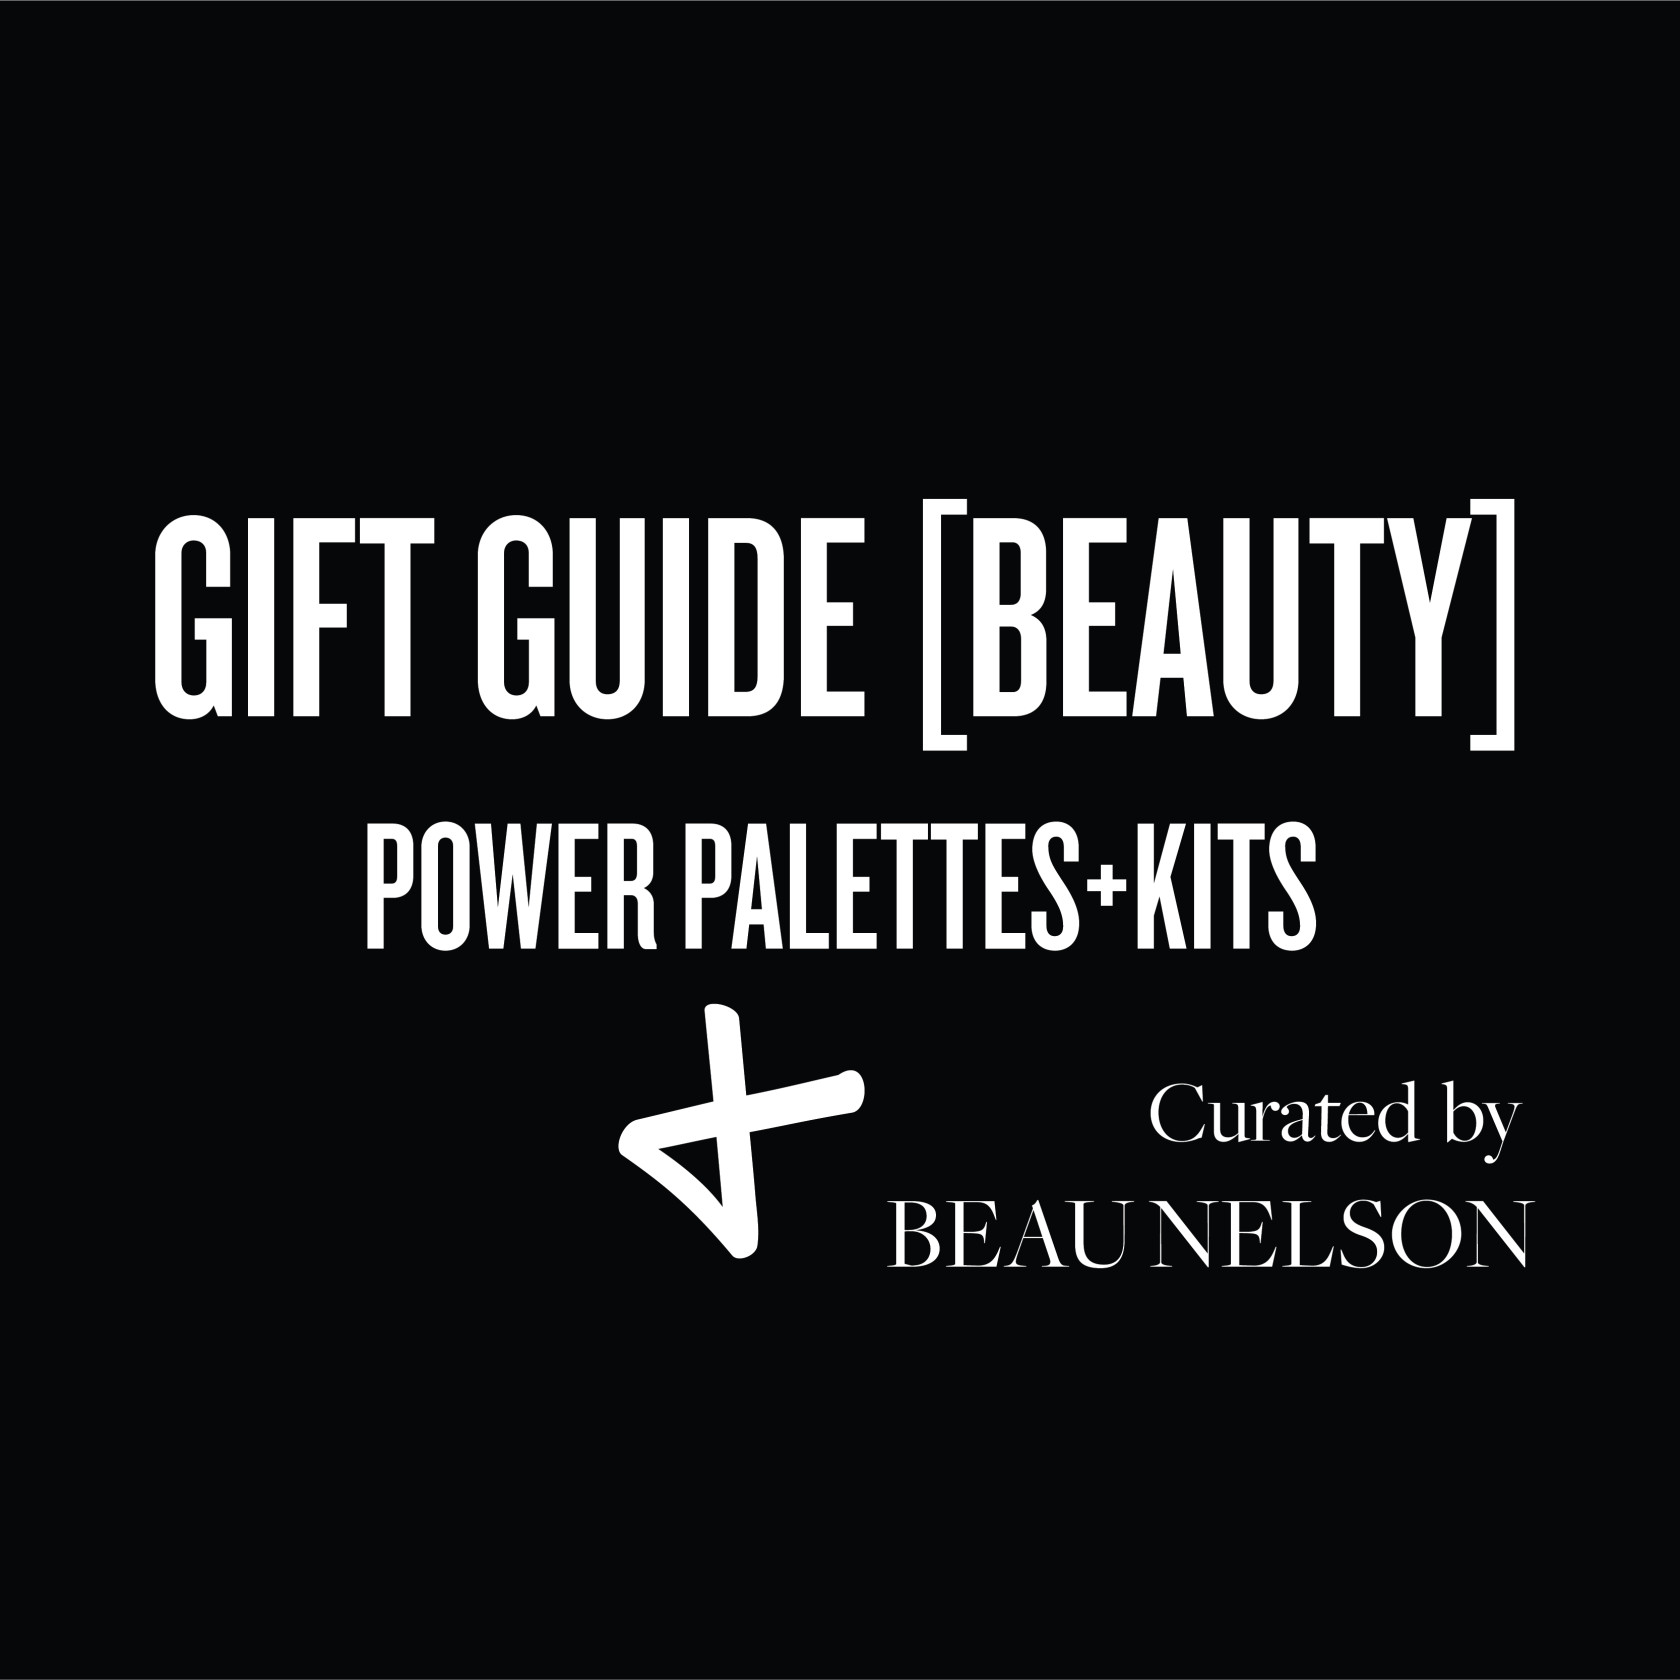 Guift guide beauty 800x800